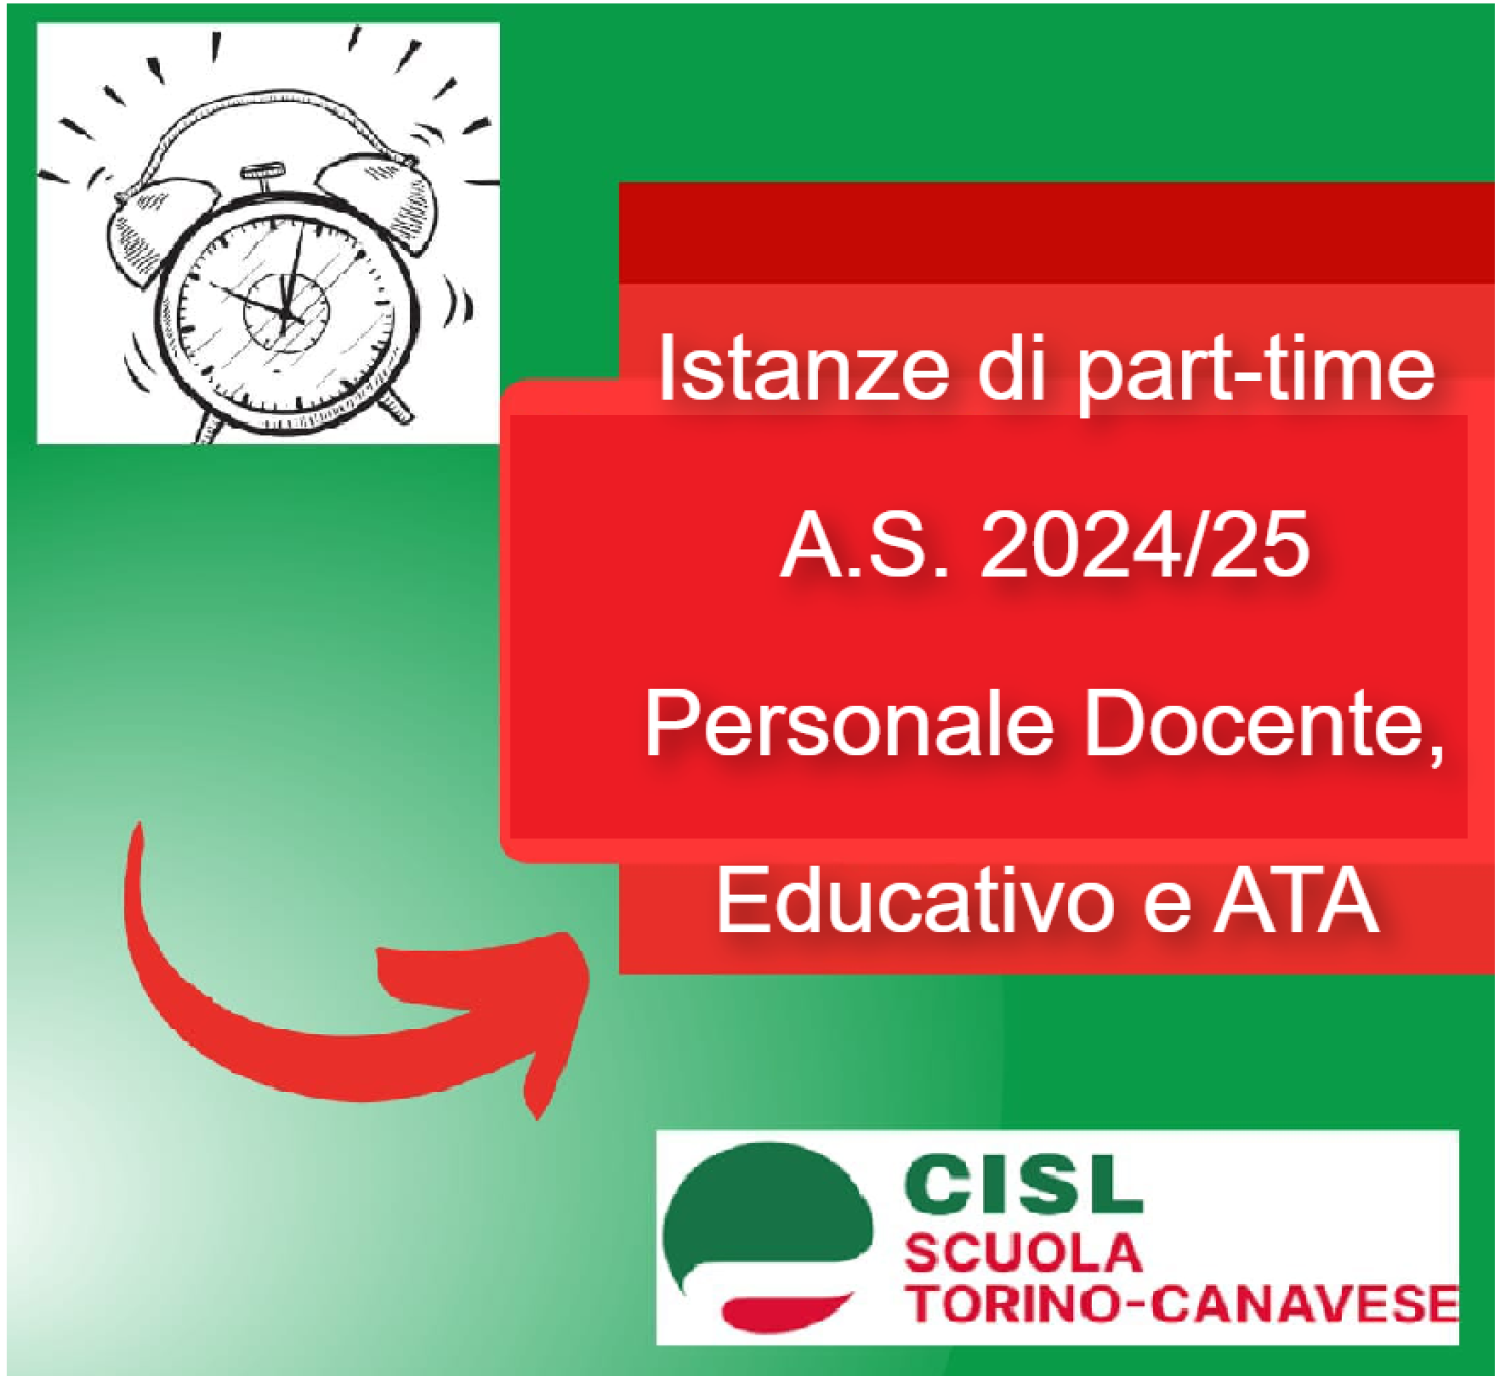 Istanze di part-time A.S. 2024/25 - Personale Docente, Educativo e ATA